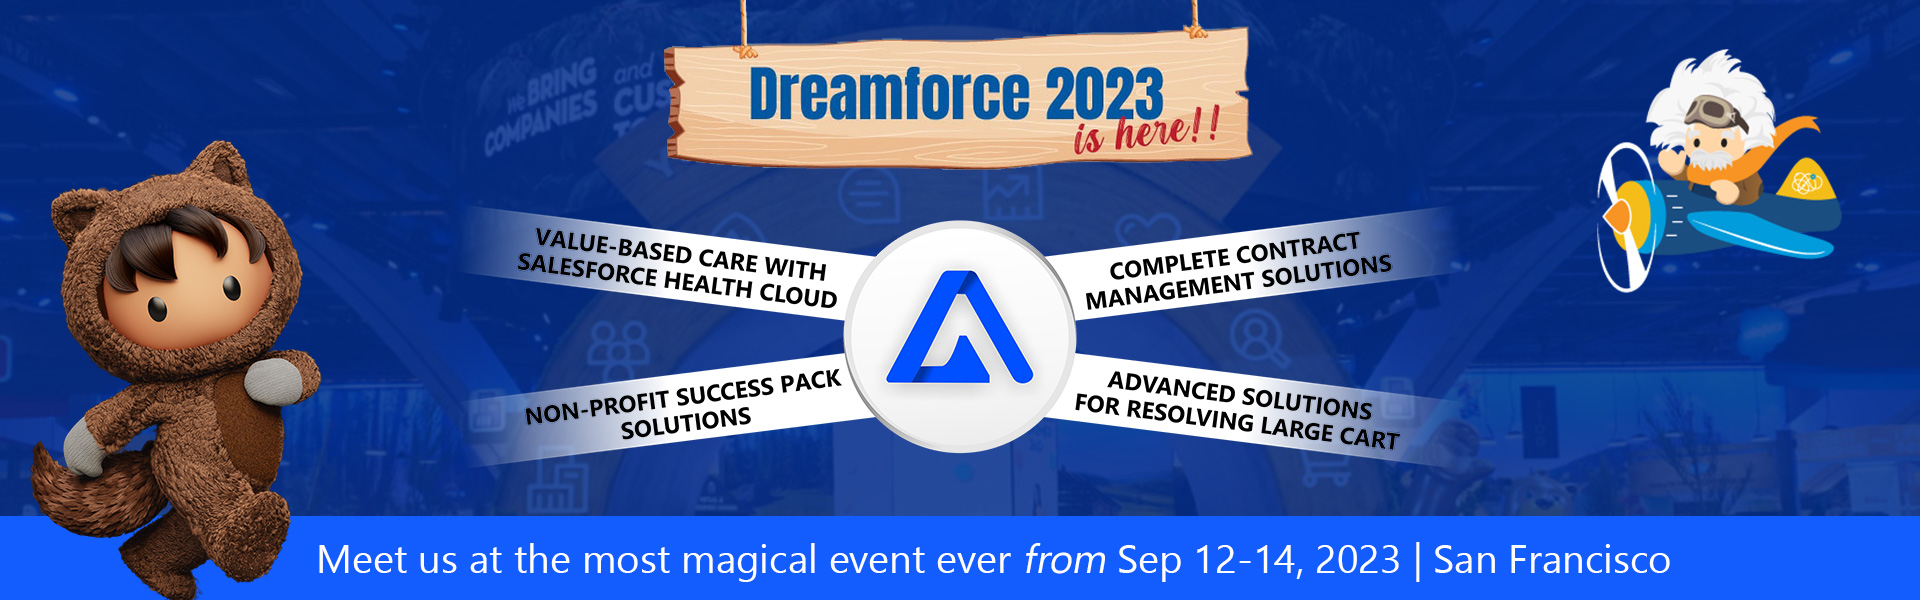 dreamforce-2023-banner-v6